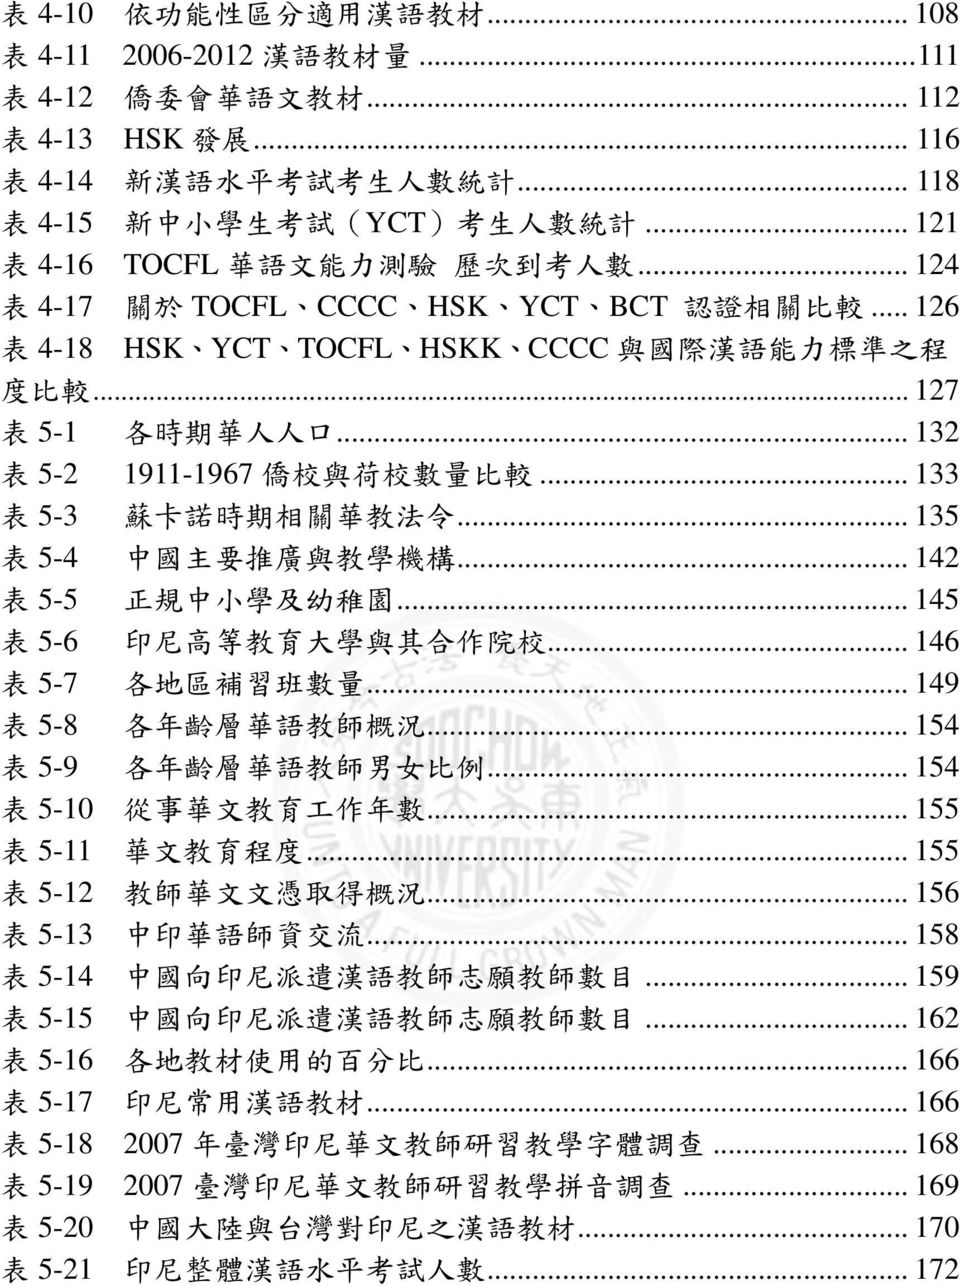 .. 126 表 4-18 HSK YCT TOCFL HSKK CCCC 與 國 際 漢 語 能 力 標 準 之 程 度 比 較... 127 表 5-1 各 時 期 華 人 人 口... 132 表 5-2 1911-1967 僑 校 與 荷 校 數 量 比 較... 133 表 5-3 蘇 卡 諾 時 期 相 關 華 教 法 令.